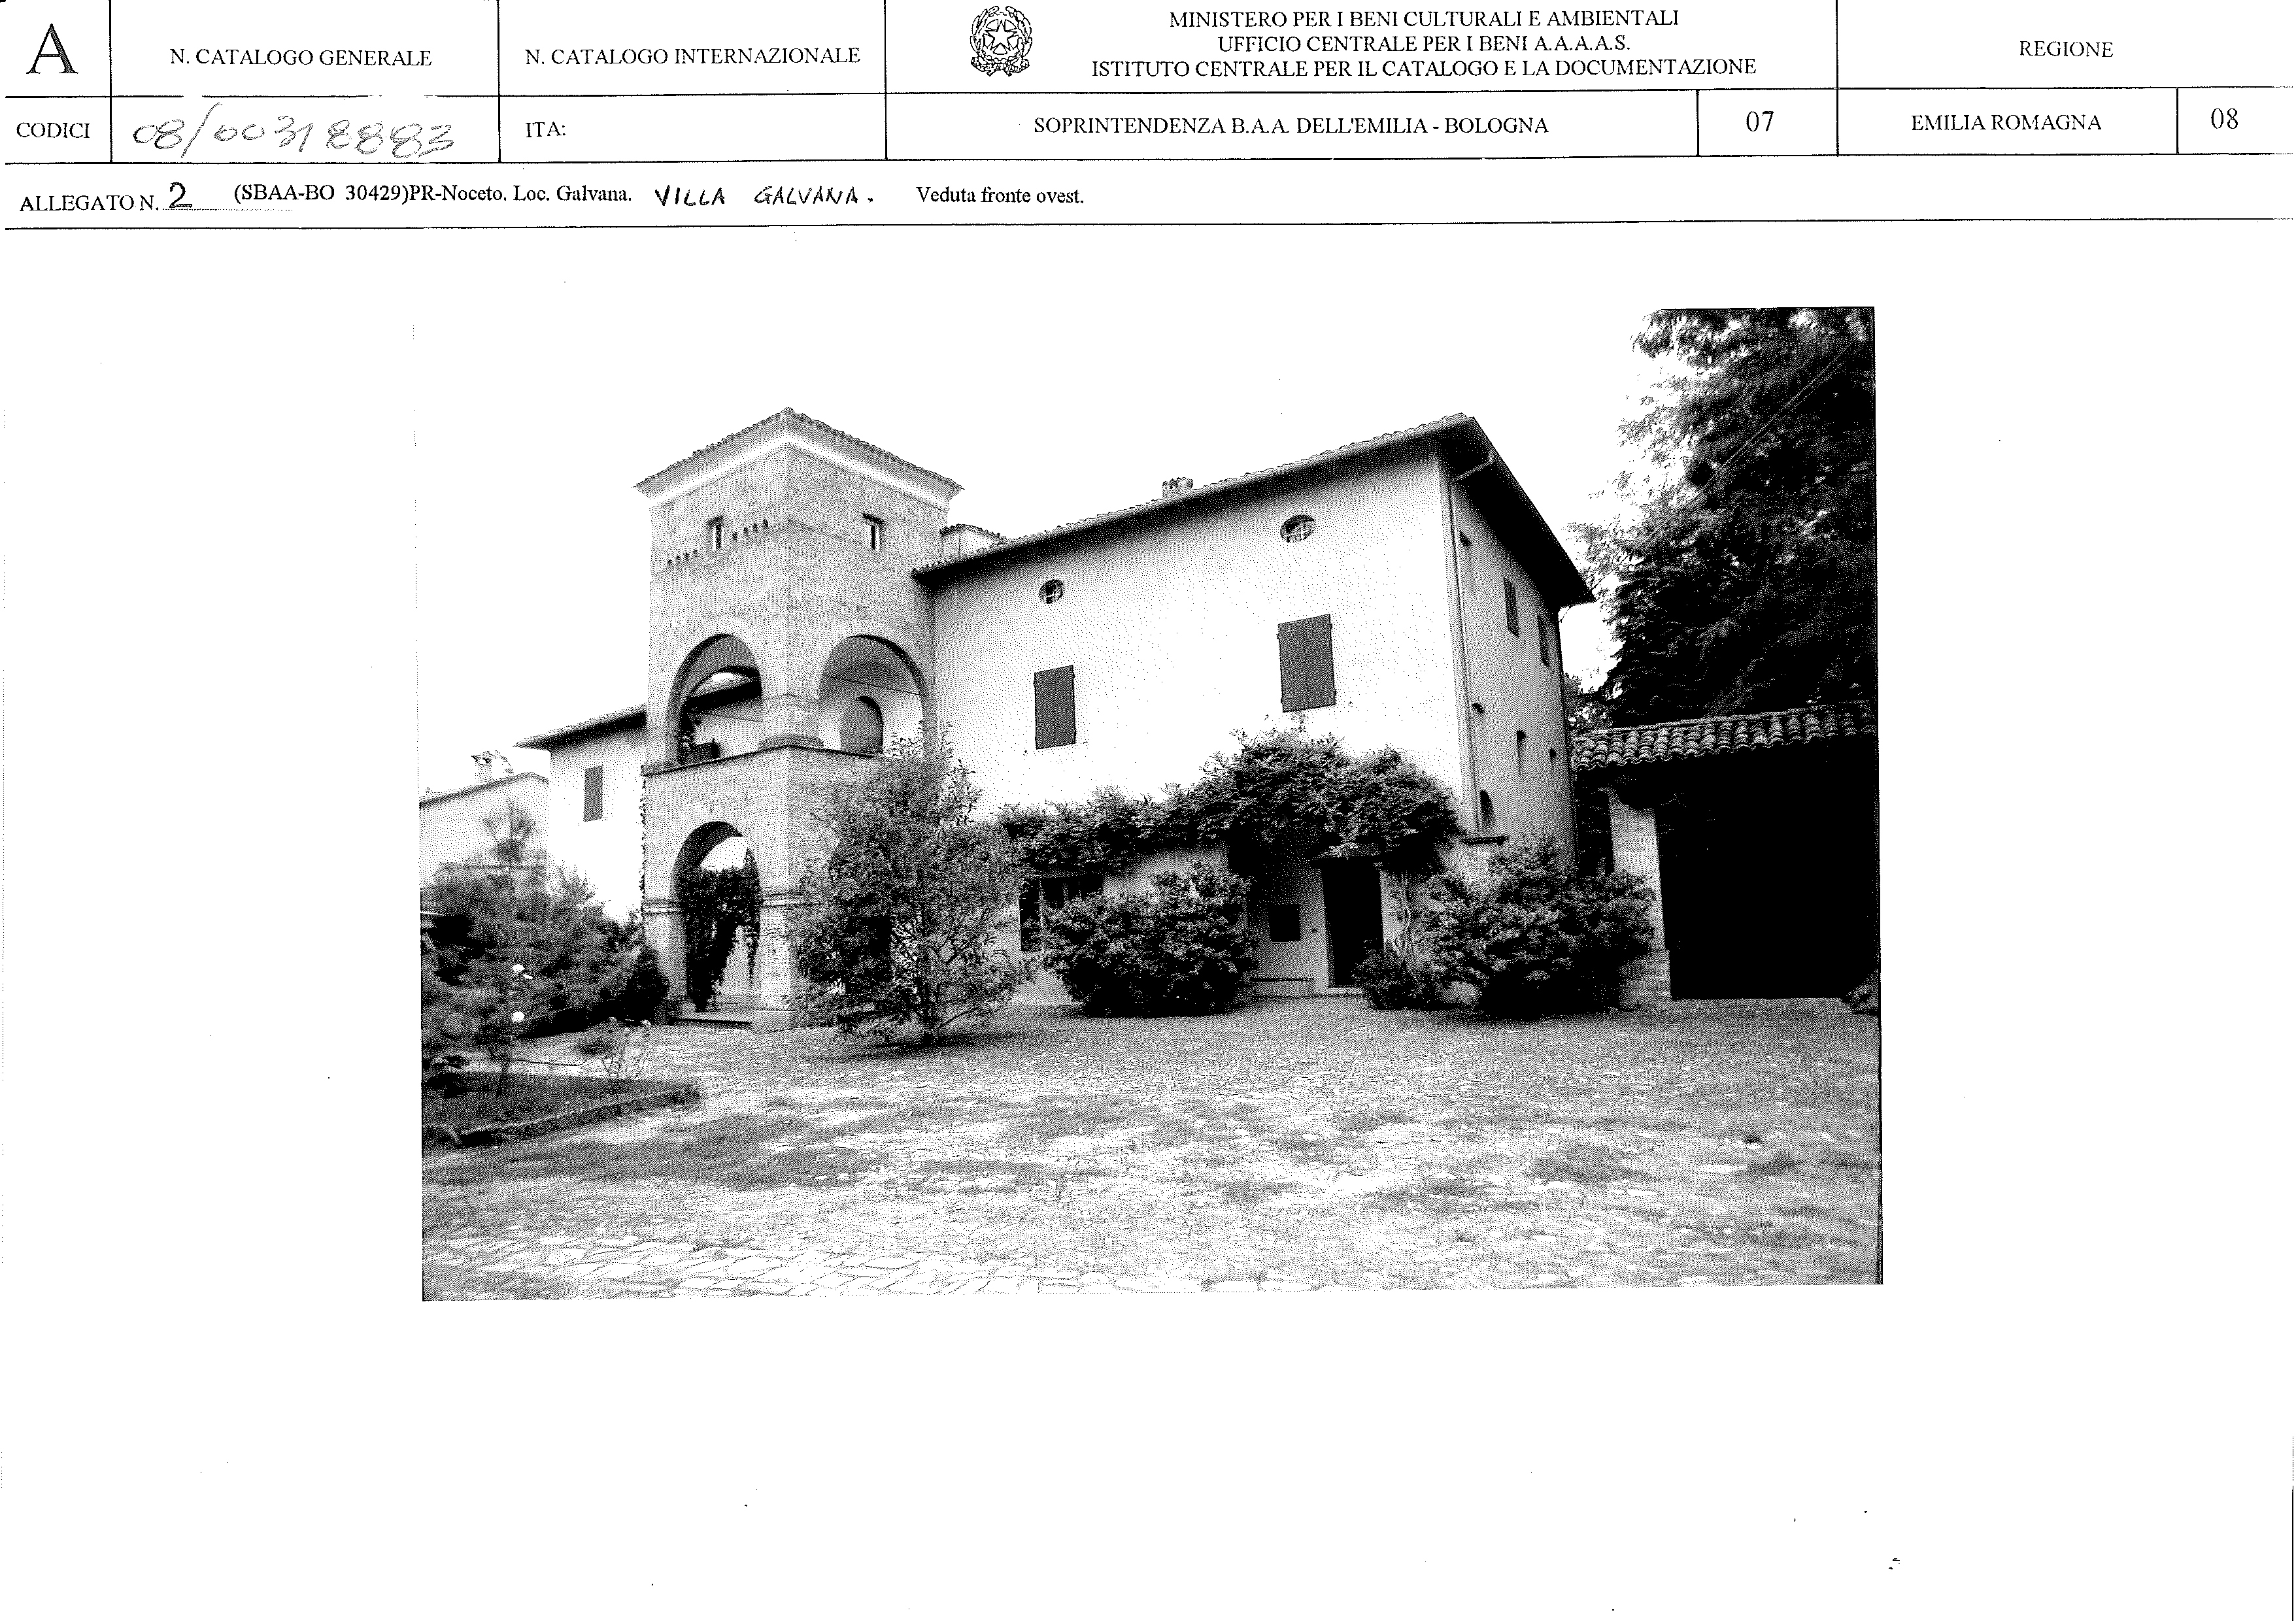 Villa Galvana (villa, dominicale) - Noceto (PR) 